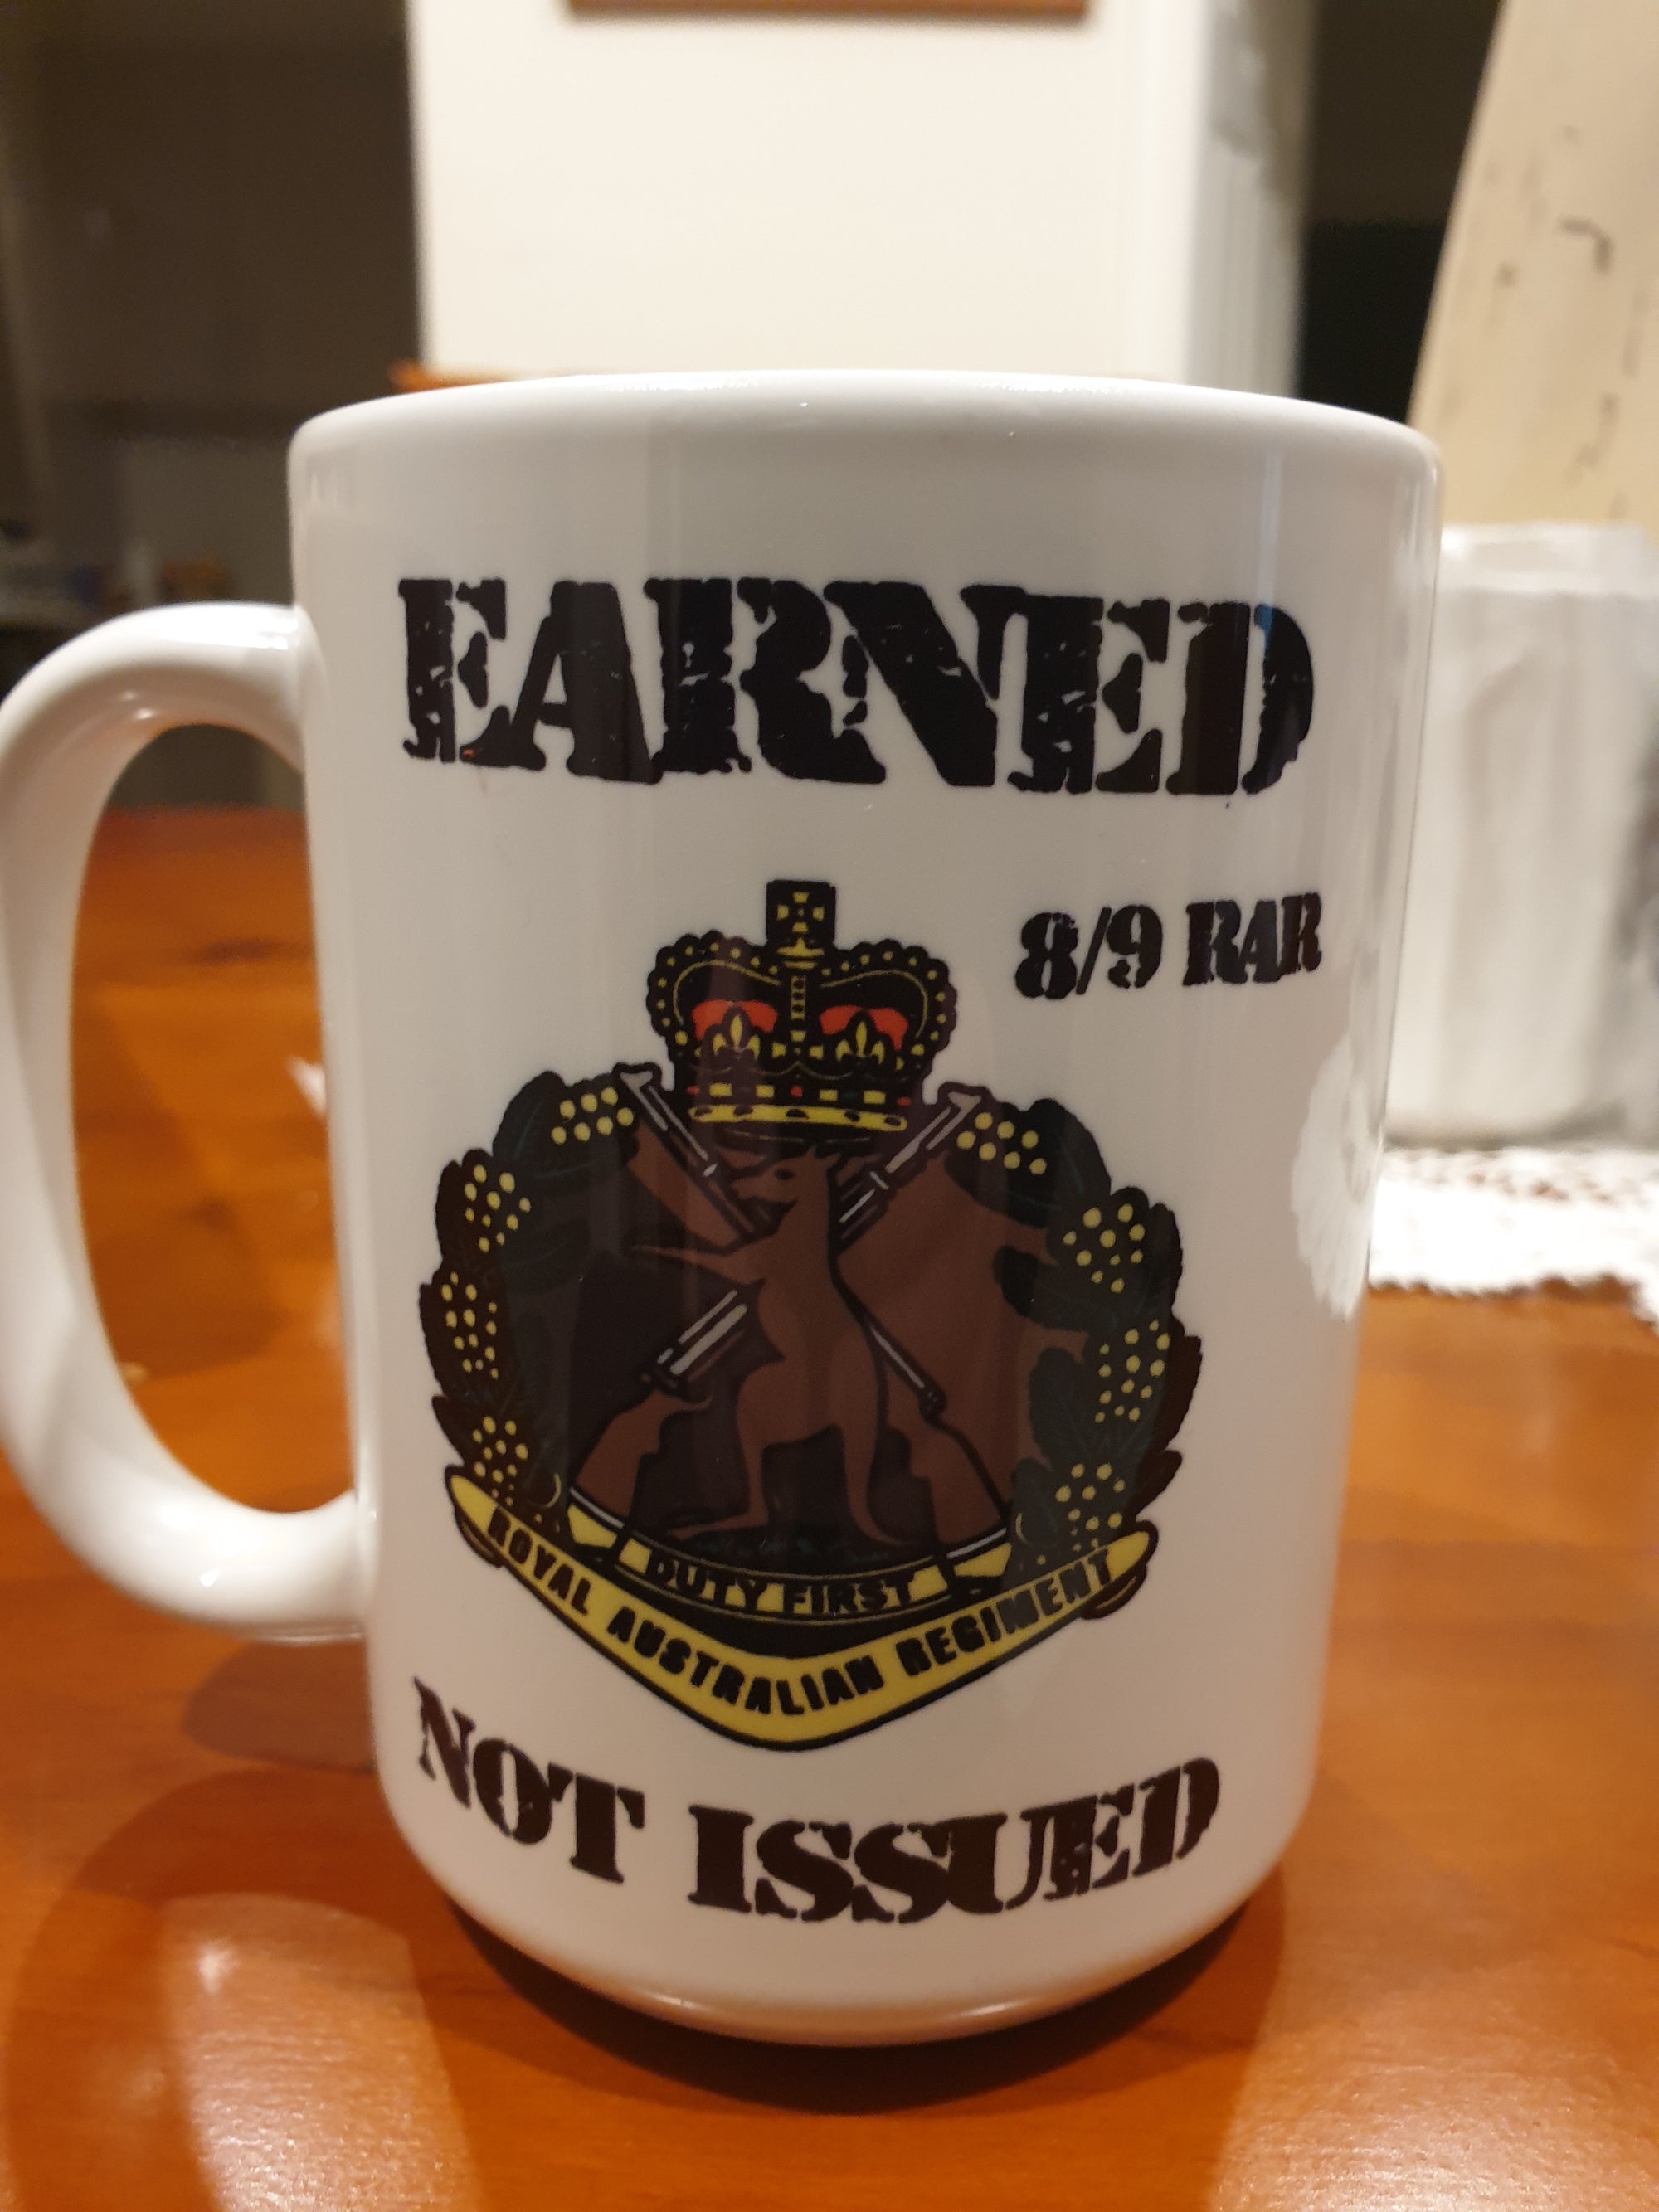 15 OZ  8/9 Earned not issued mug